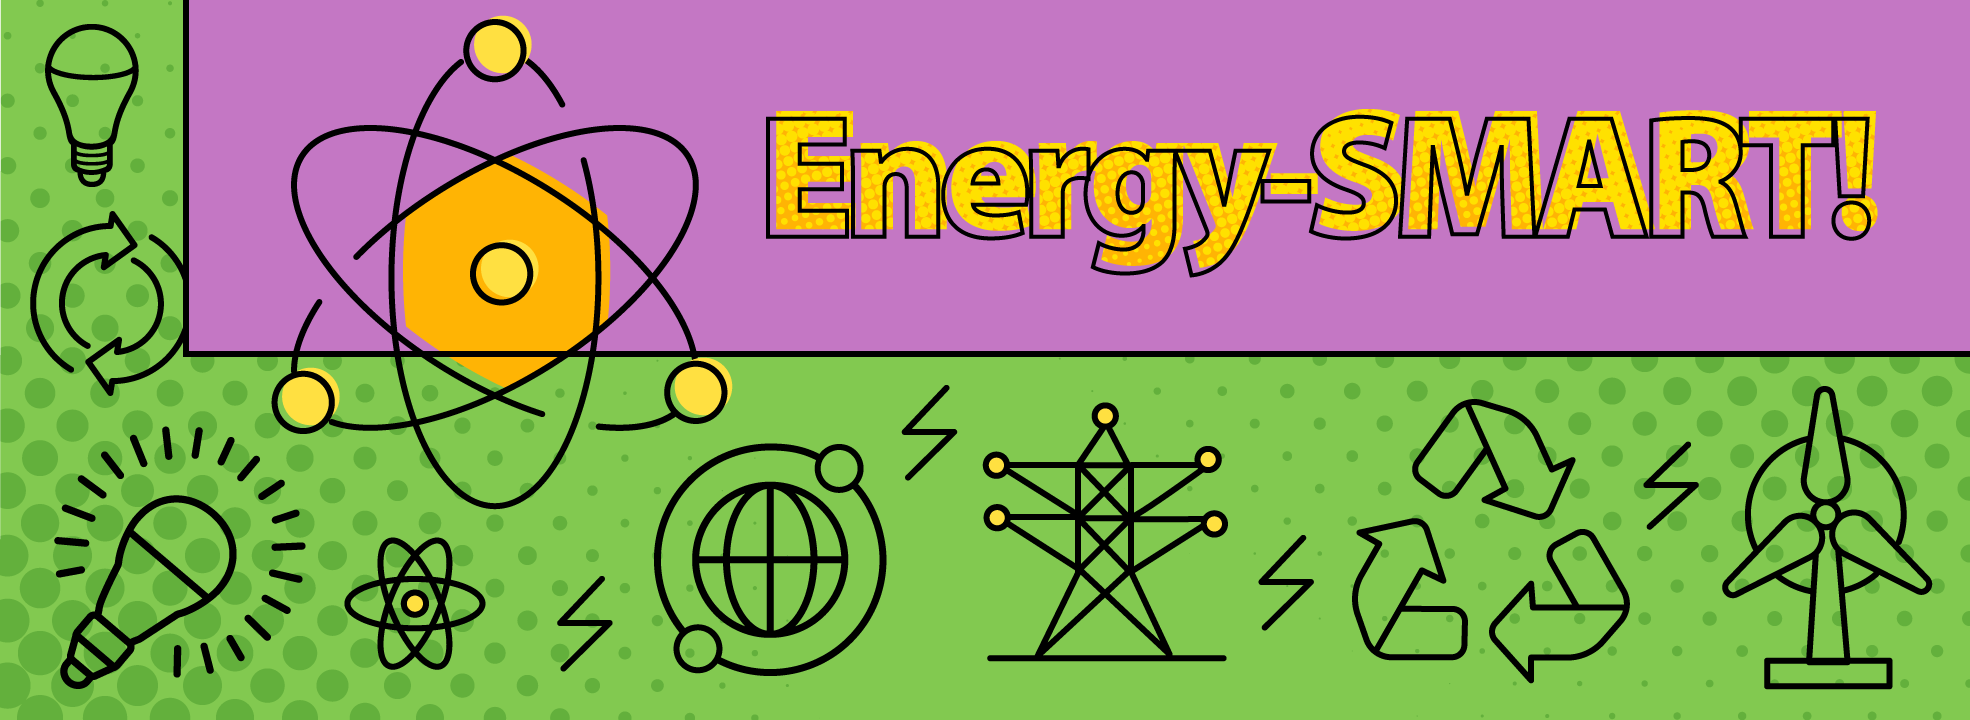 Energy-SMART!